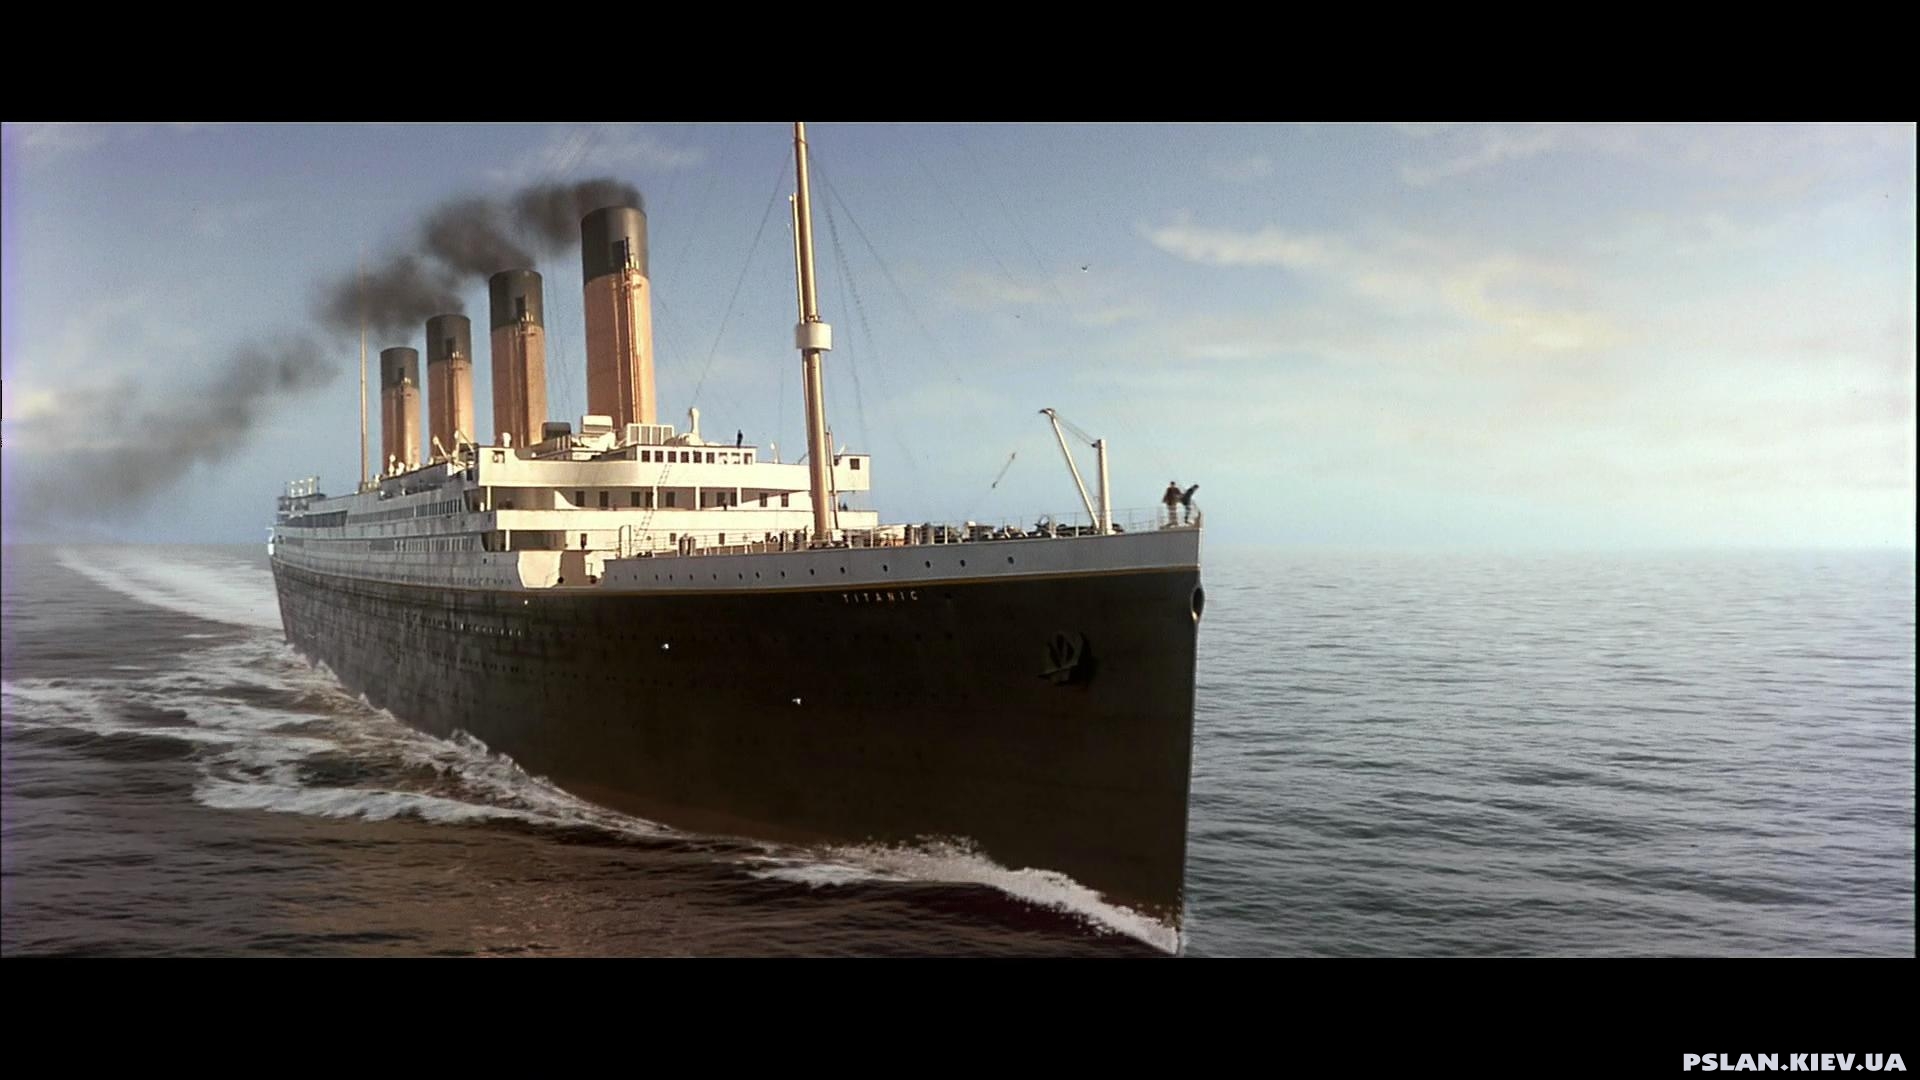 Titanic free instals